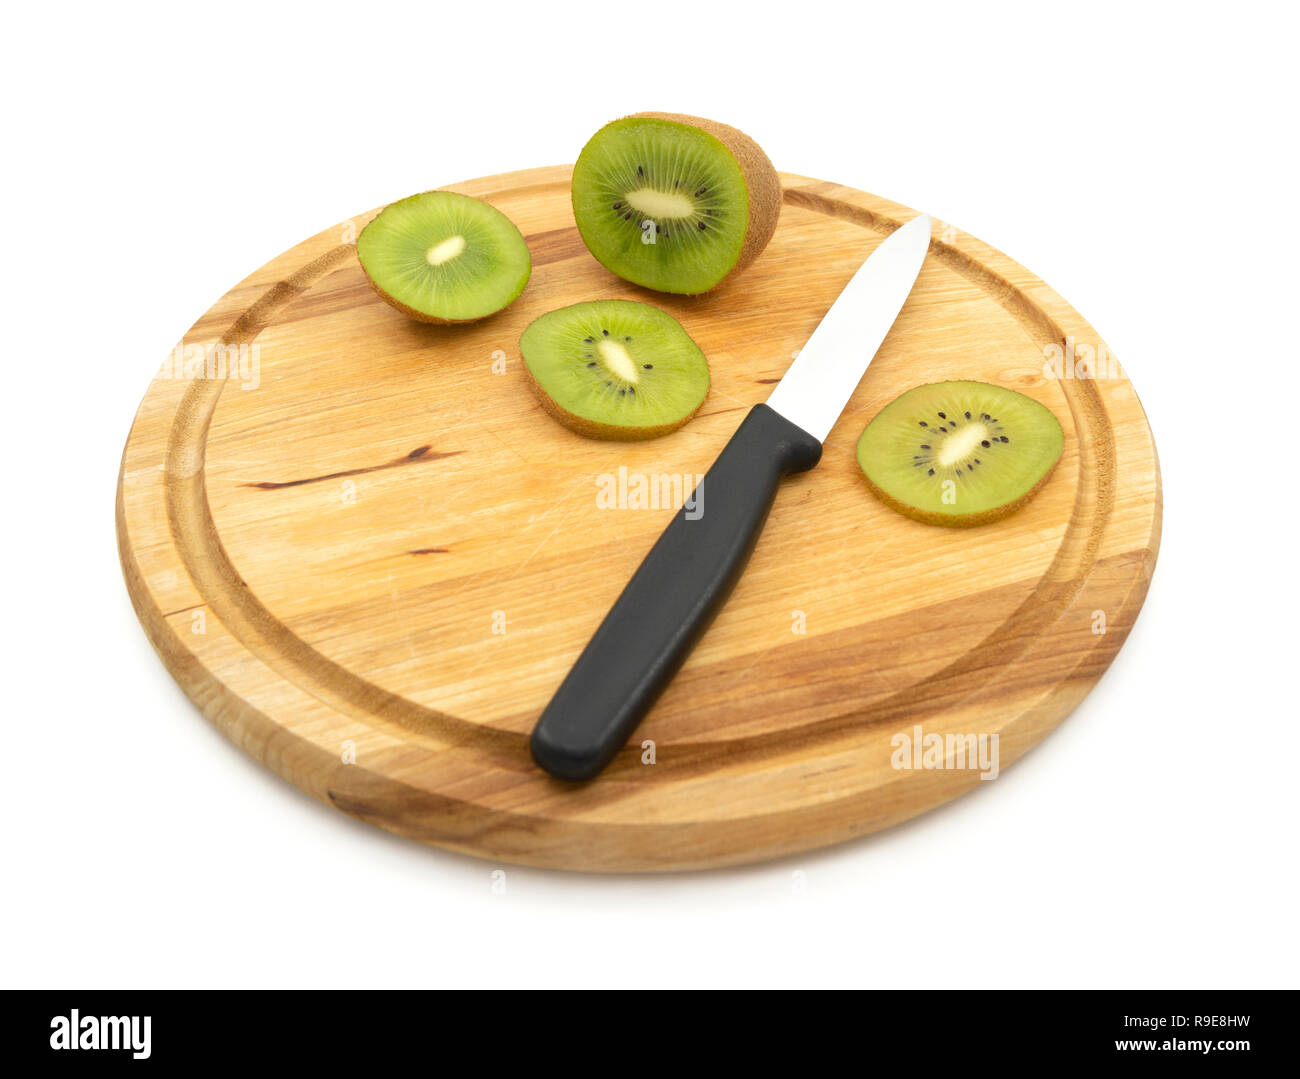 Couteau de cuisine utilisé pour couper des tranches de kiwi, montrant péricarpe vert et les graines noires Banque D'Images